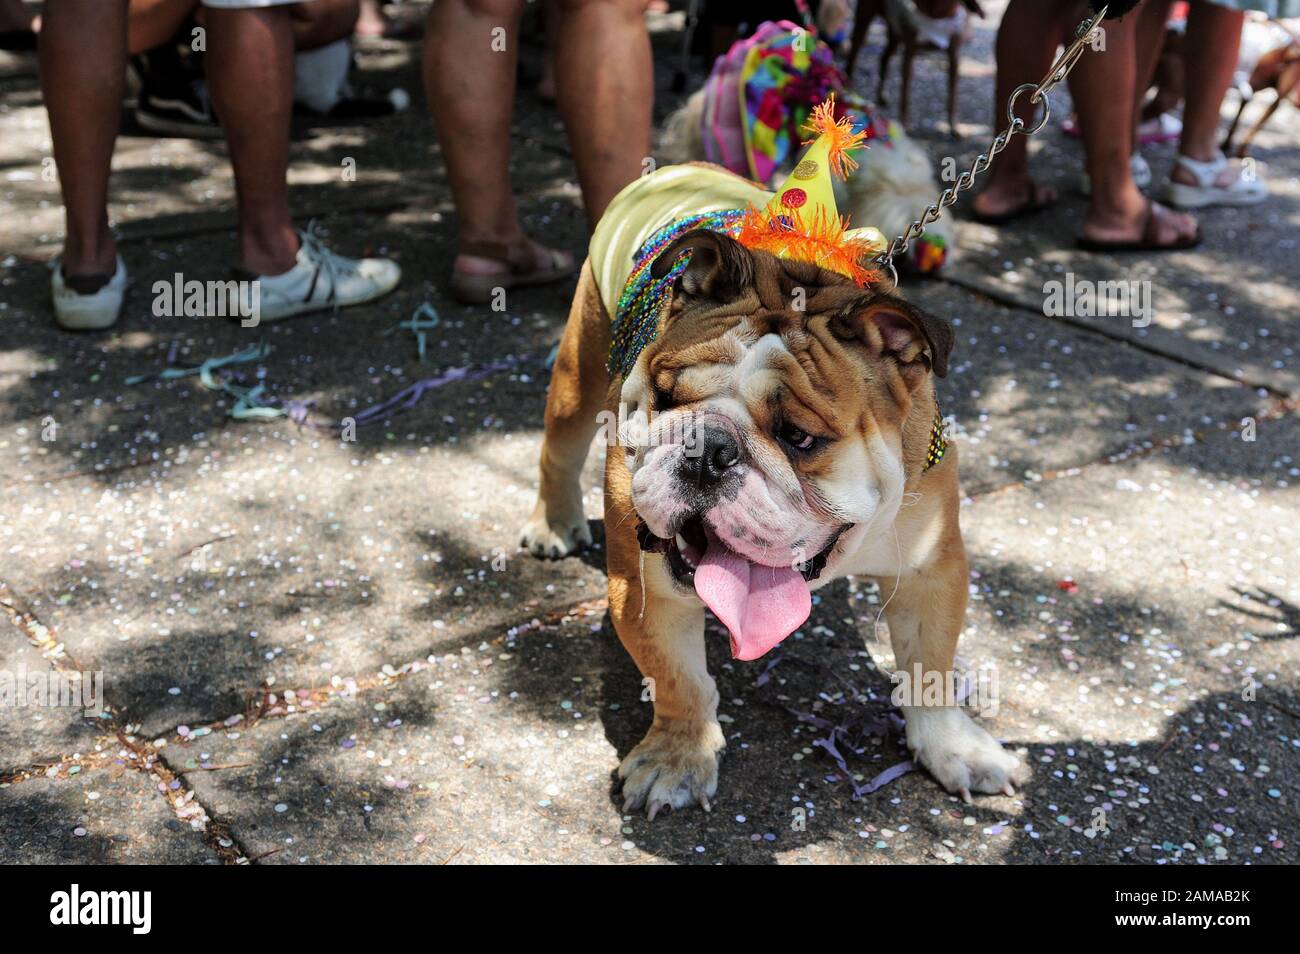 América del Sur, Brasil – 23 de febrero de 2019: Se ven perros disfrazados  durante la fiesta